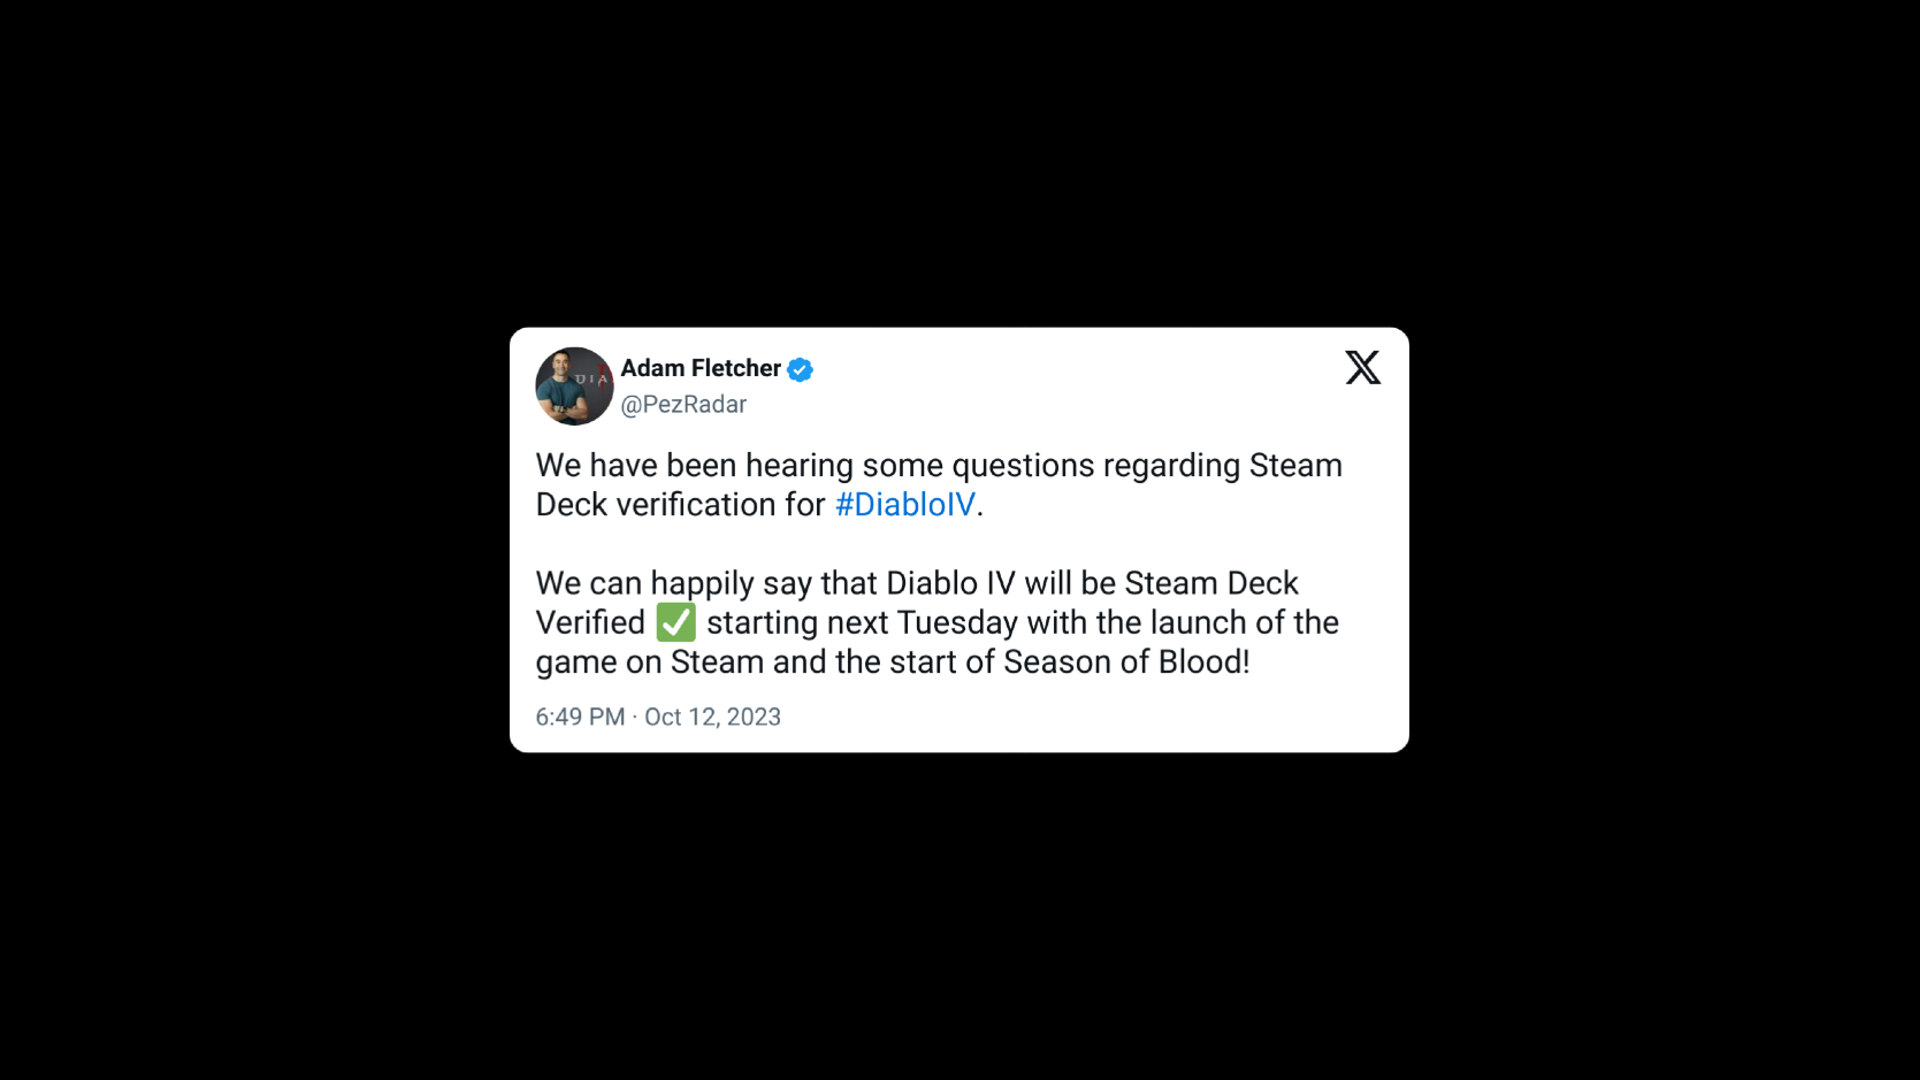 Der Entwickler von Diablo 4 bestätigt in einem Post auf Twitter, dass Diablo 4 von Steam Deck verifiziert wurde